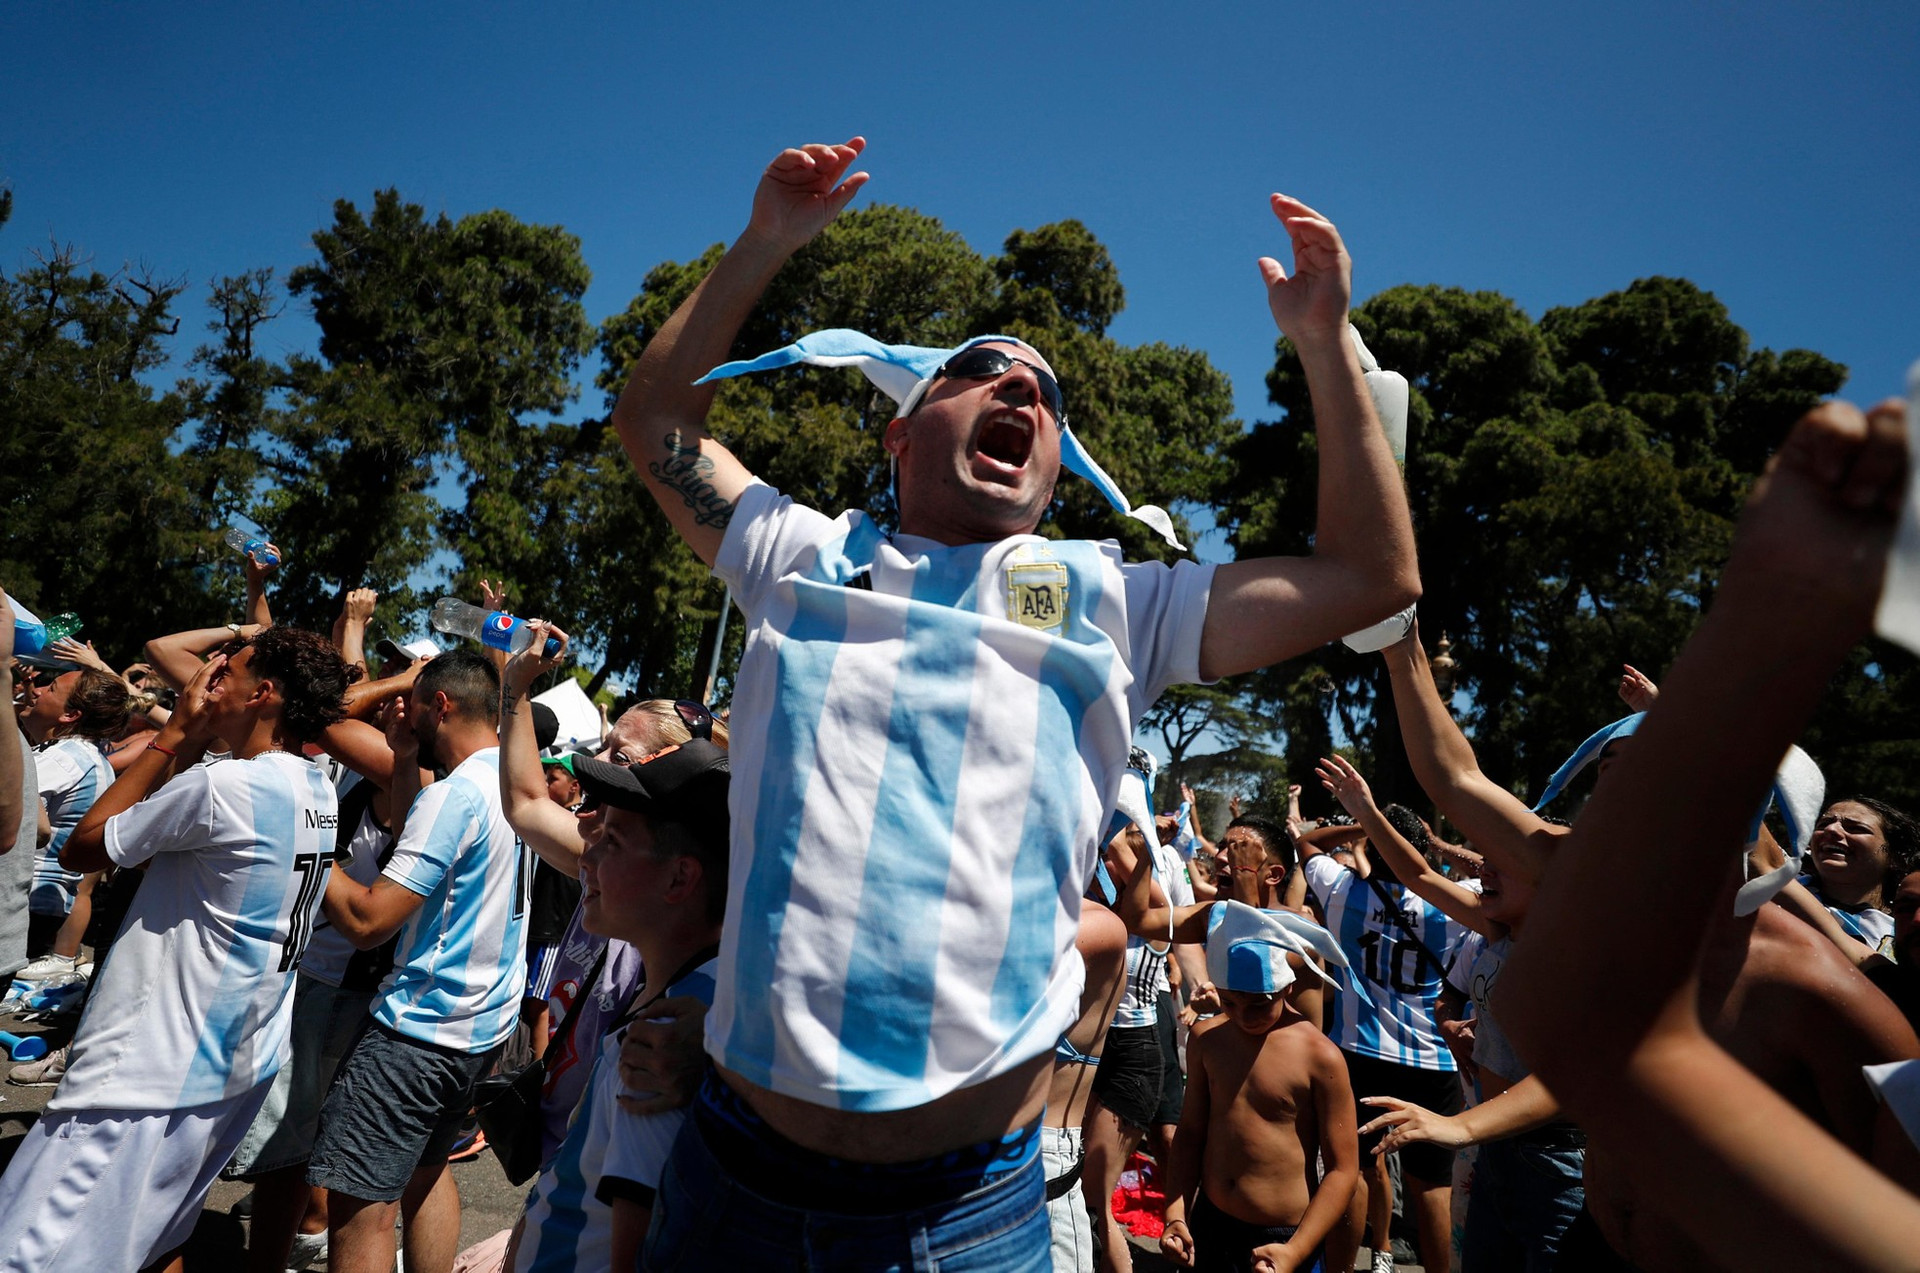 Thủ đô Argentina chìm trong mưa nước mắt vì hạnh phúc ảnh 2